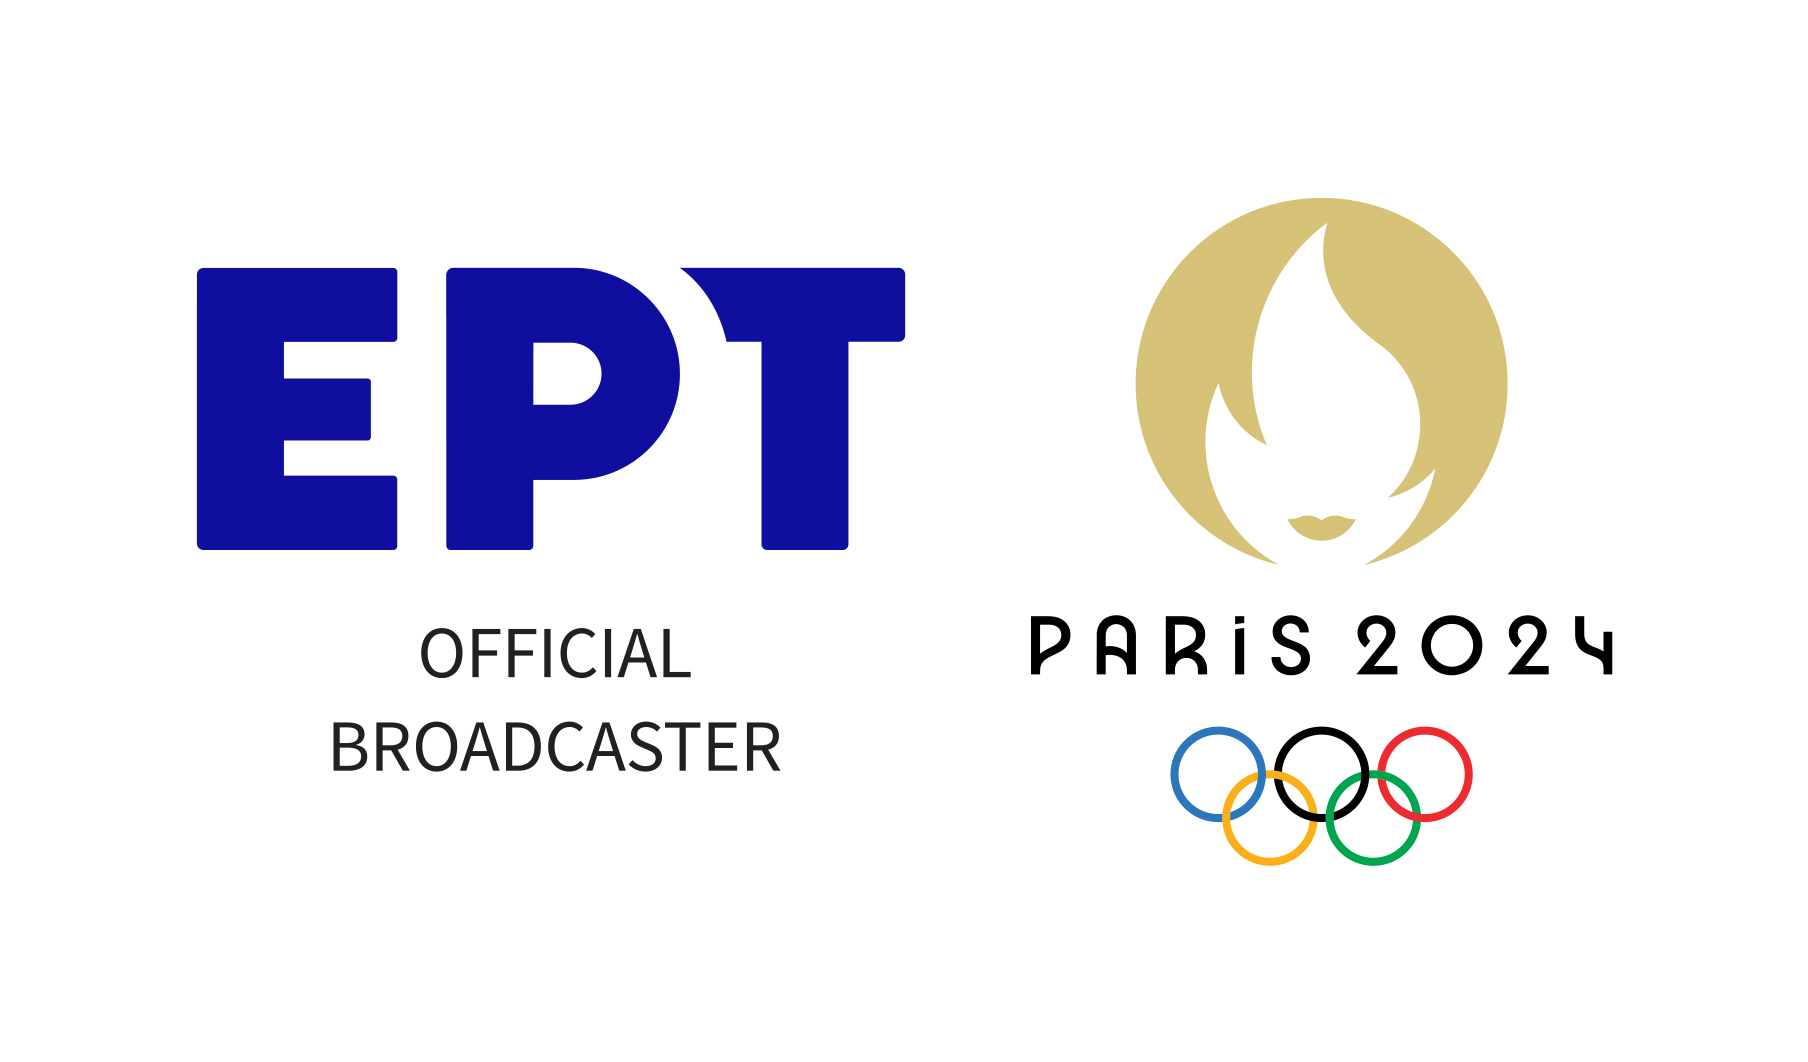 Ολυμπιακοί Αγώνες «Παρίσι 2024» – Το κορυφαίο αθλητικό γεγονός έρχεται στην ΕΡΤ! – Δείτε το πλήρες πρόγραμμα των Αγώνων